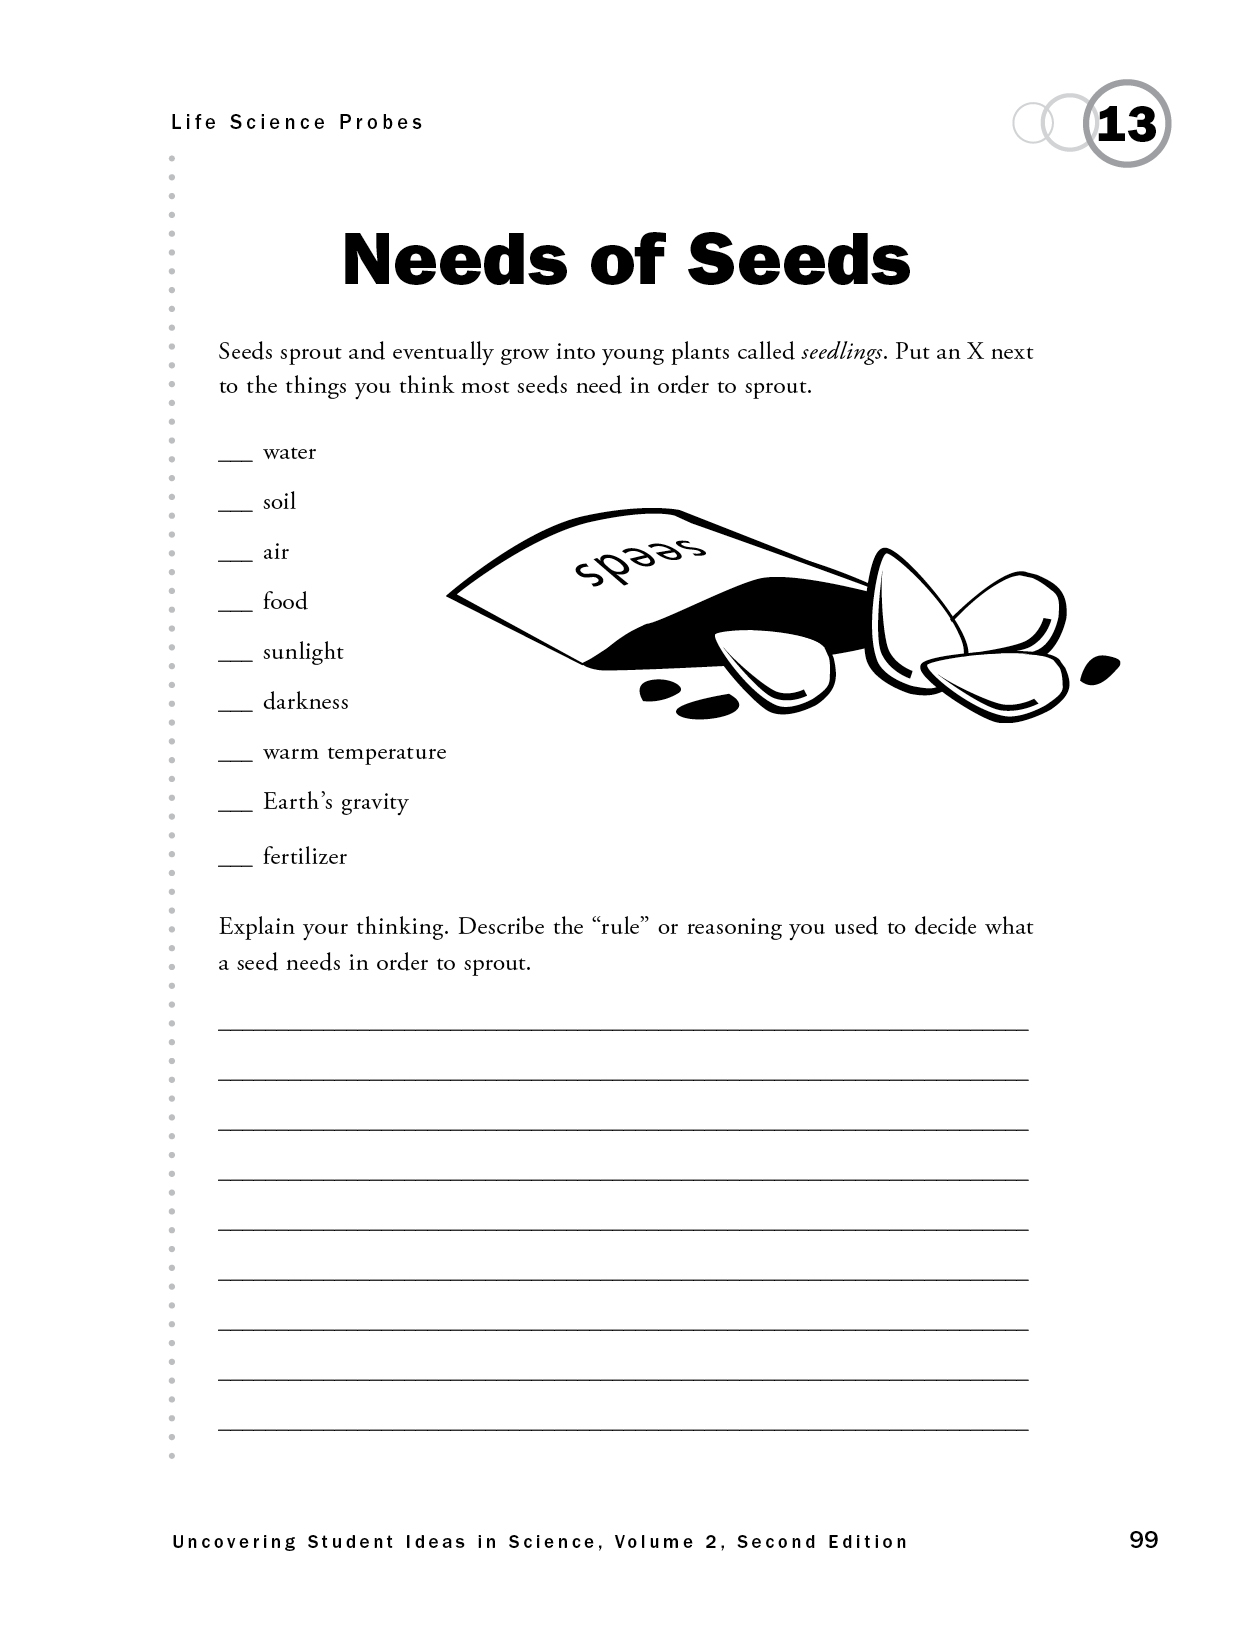 Needs of Seeds